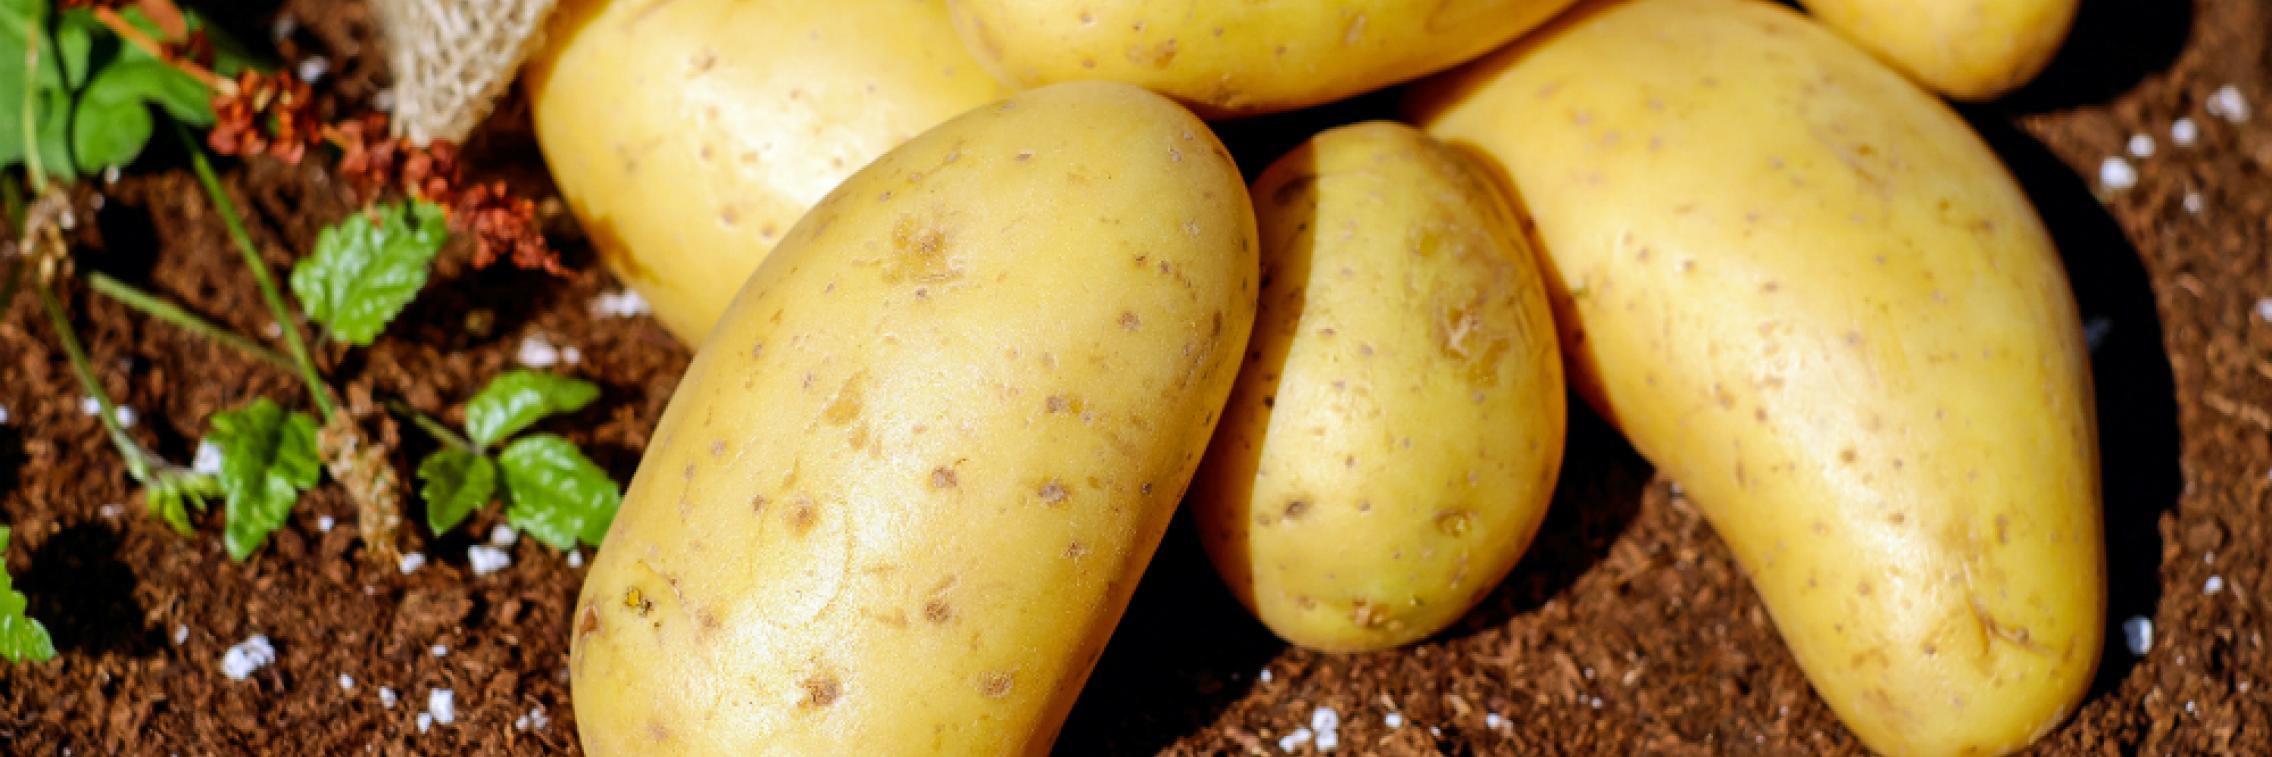 Potatoes close up